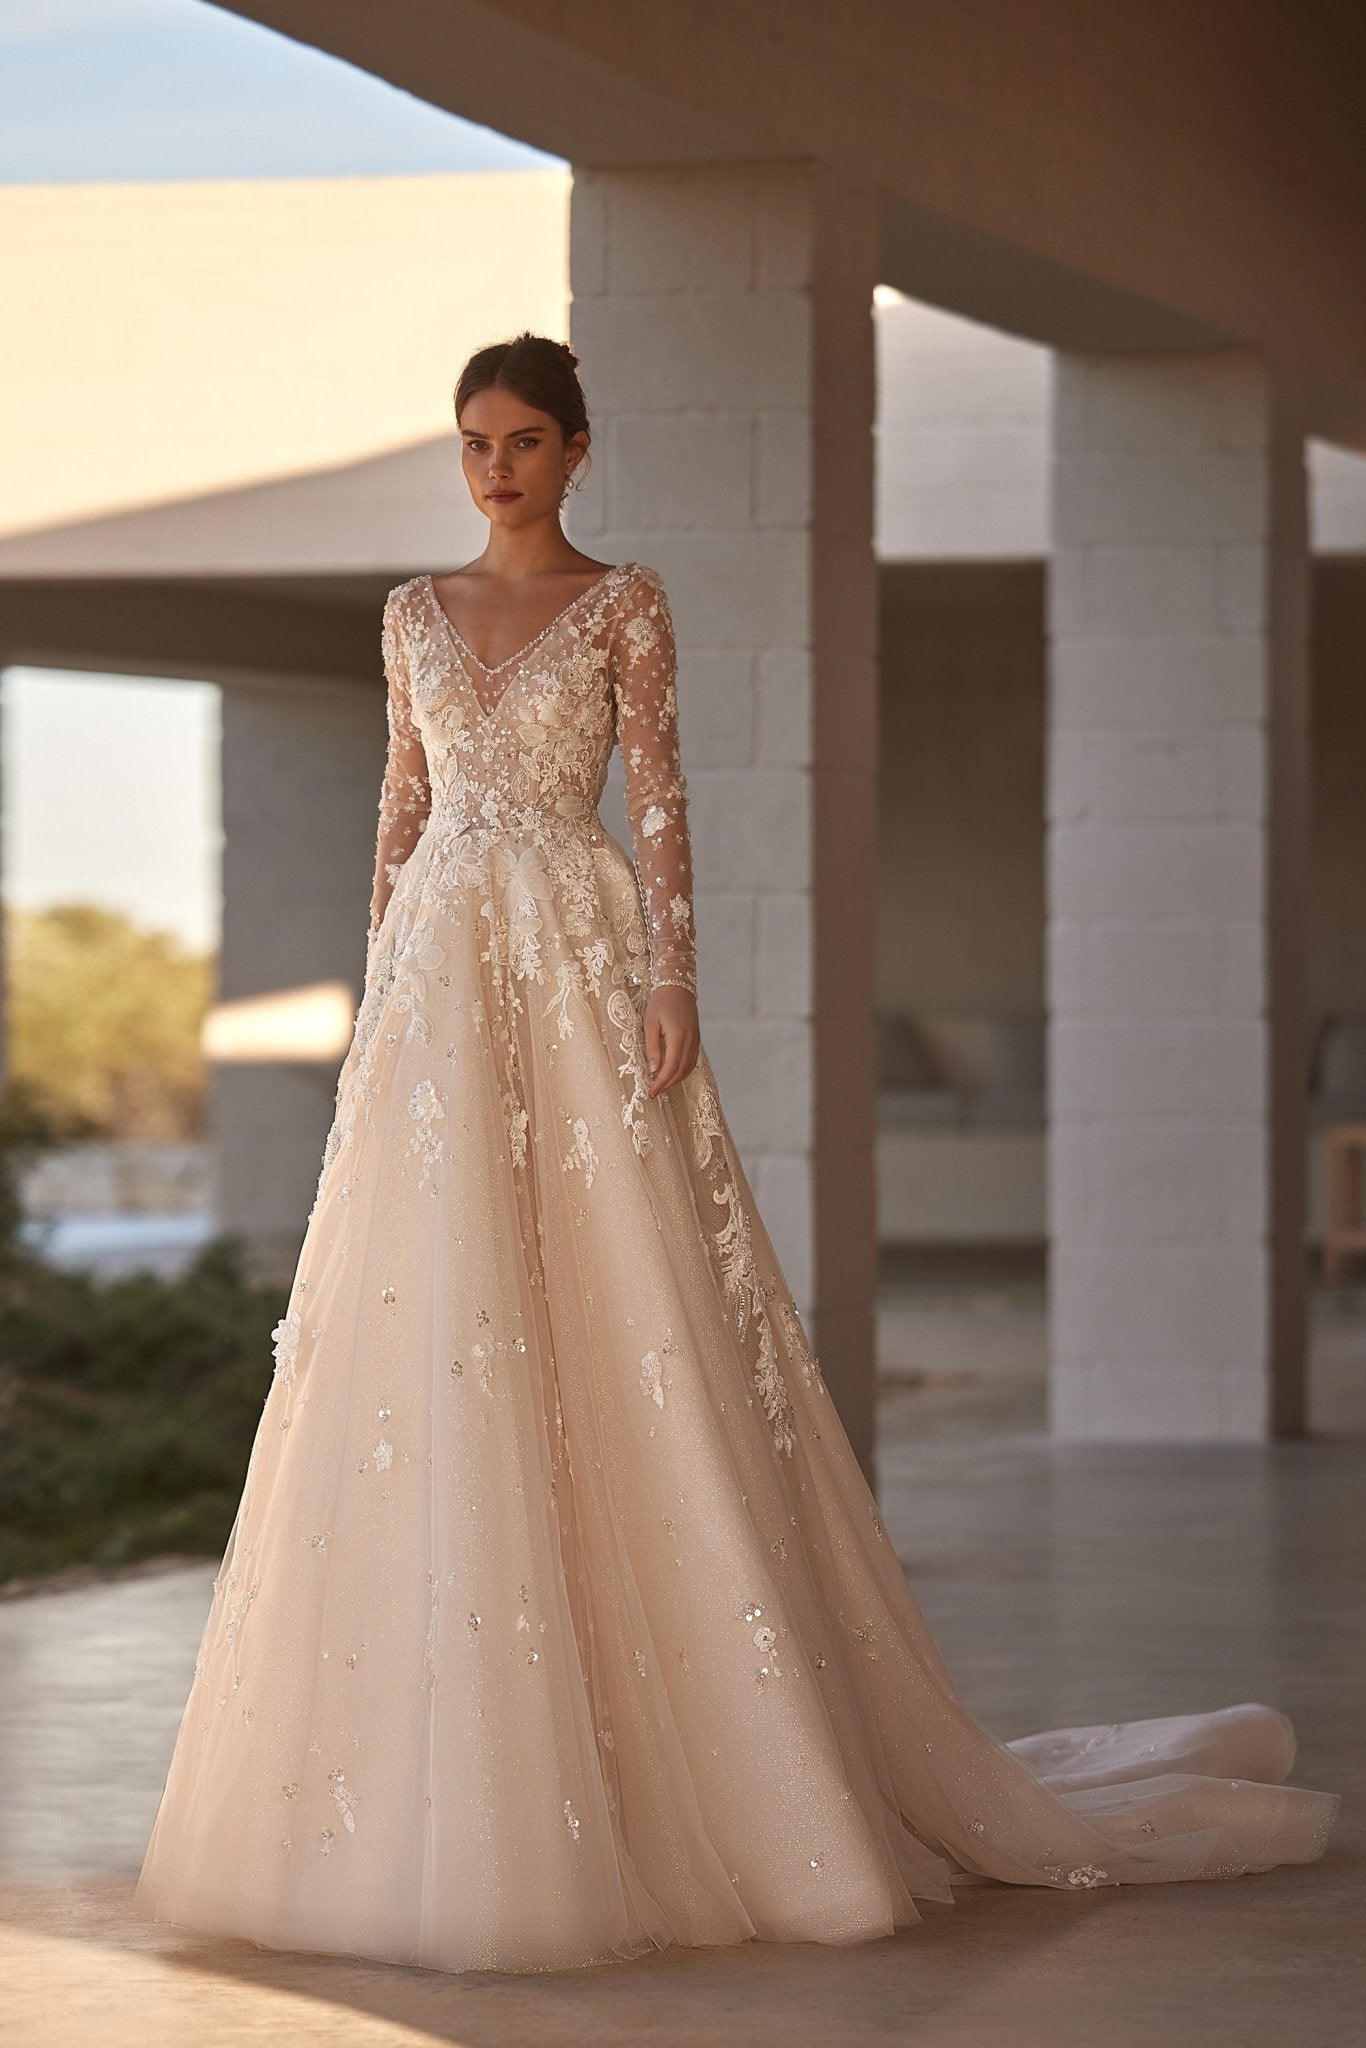 Luxurious Long Sleeve Lace Wedding Dress with Beaded Details and Elegant Train Plus Size - WonderlandByLilian